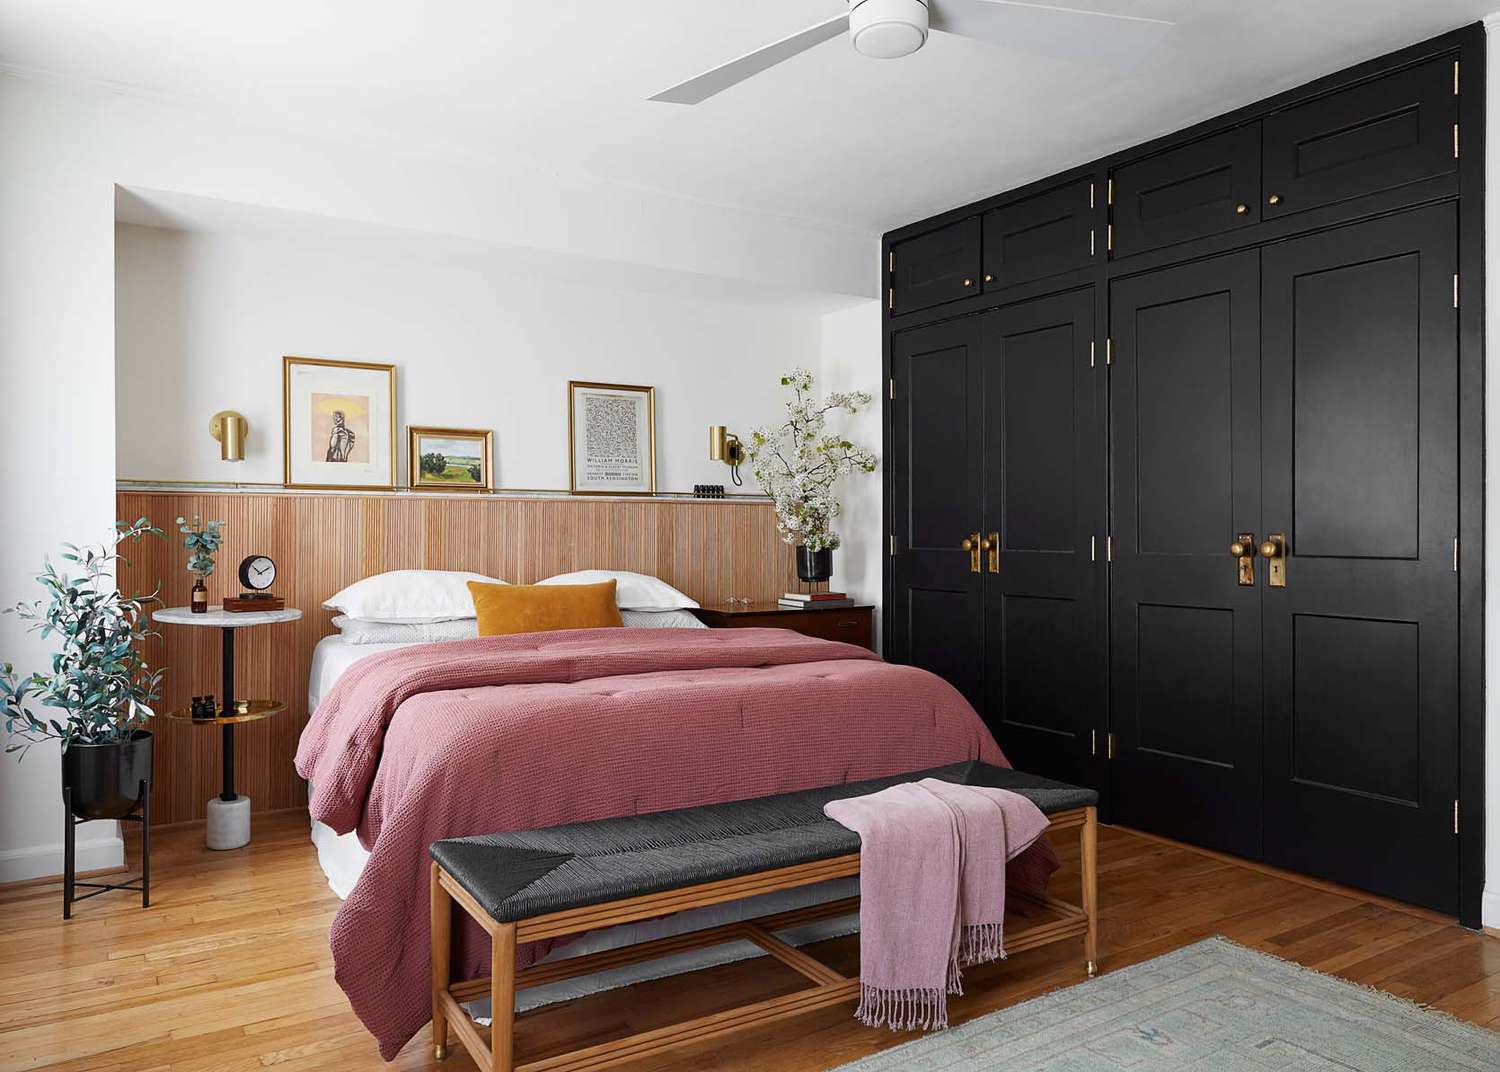 Una cama de color melocotón se sienta junto a una pared de acento negro